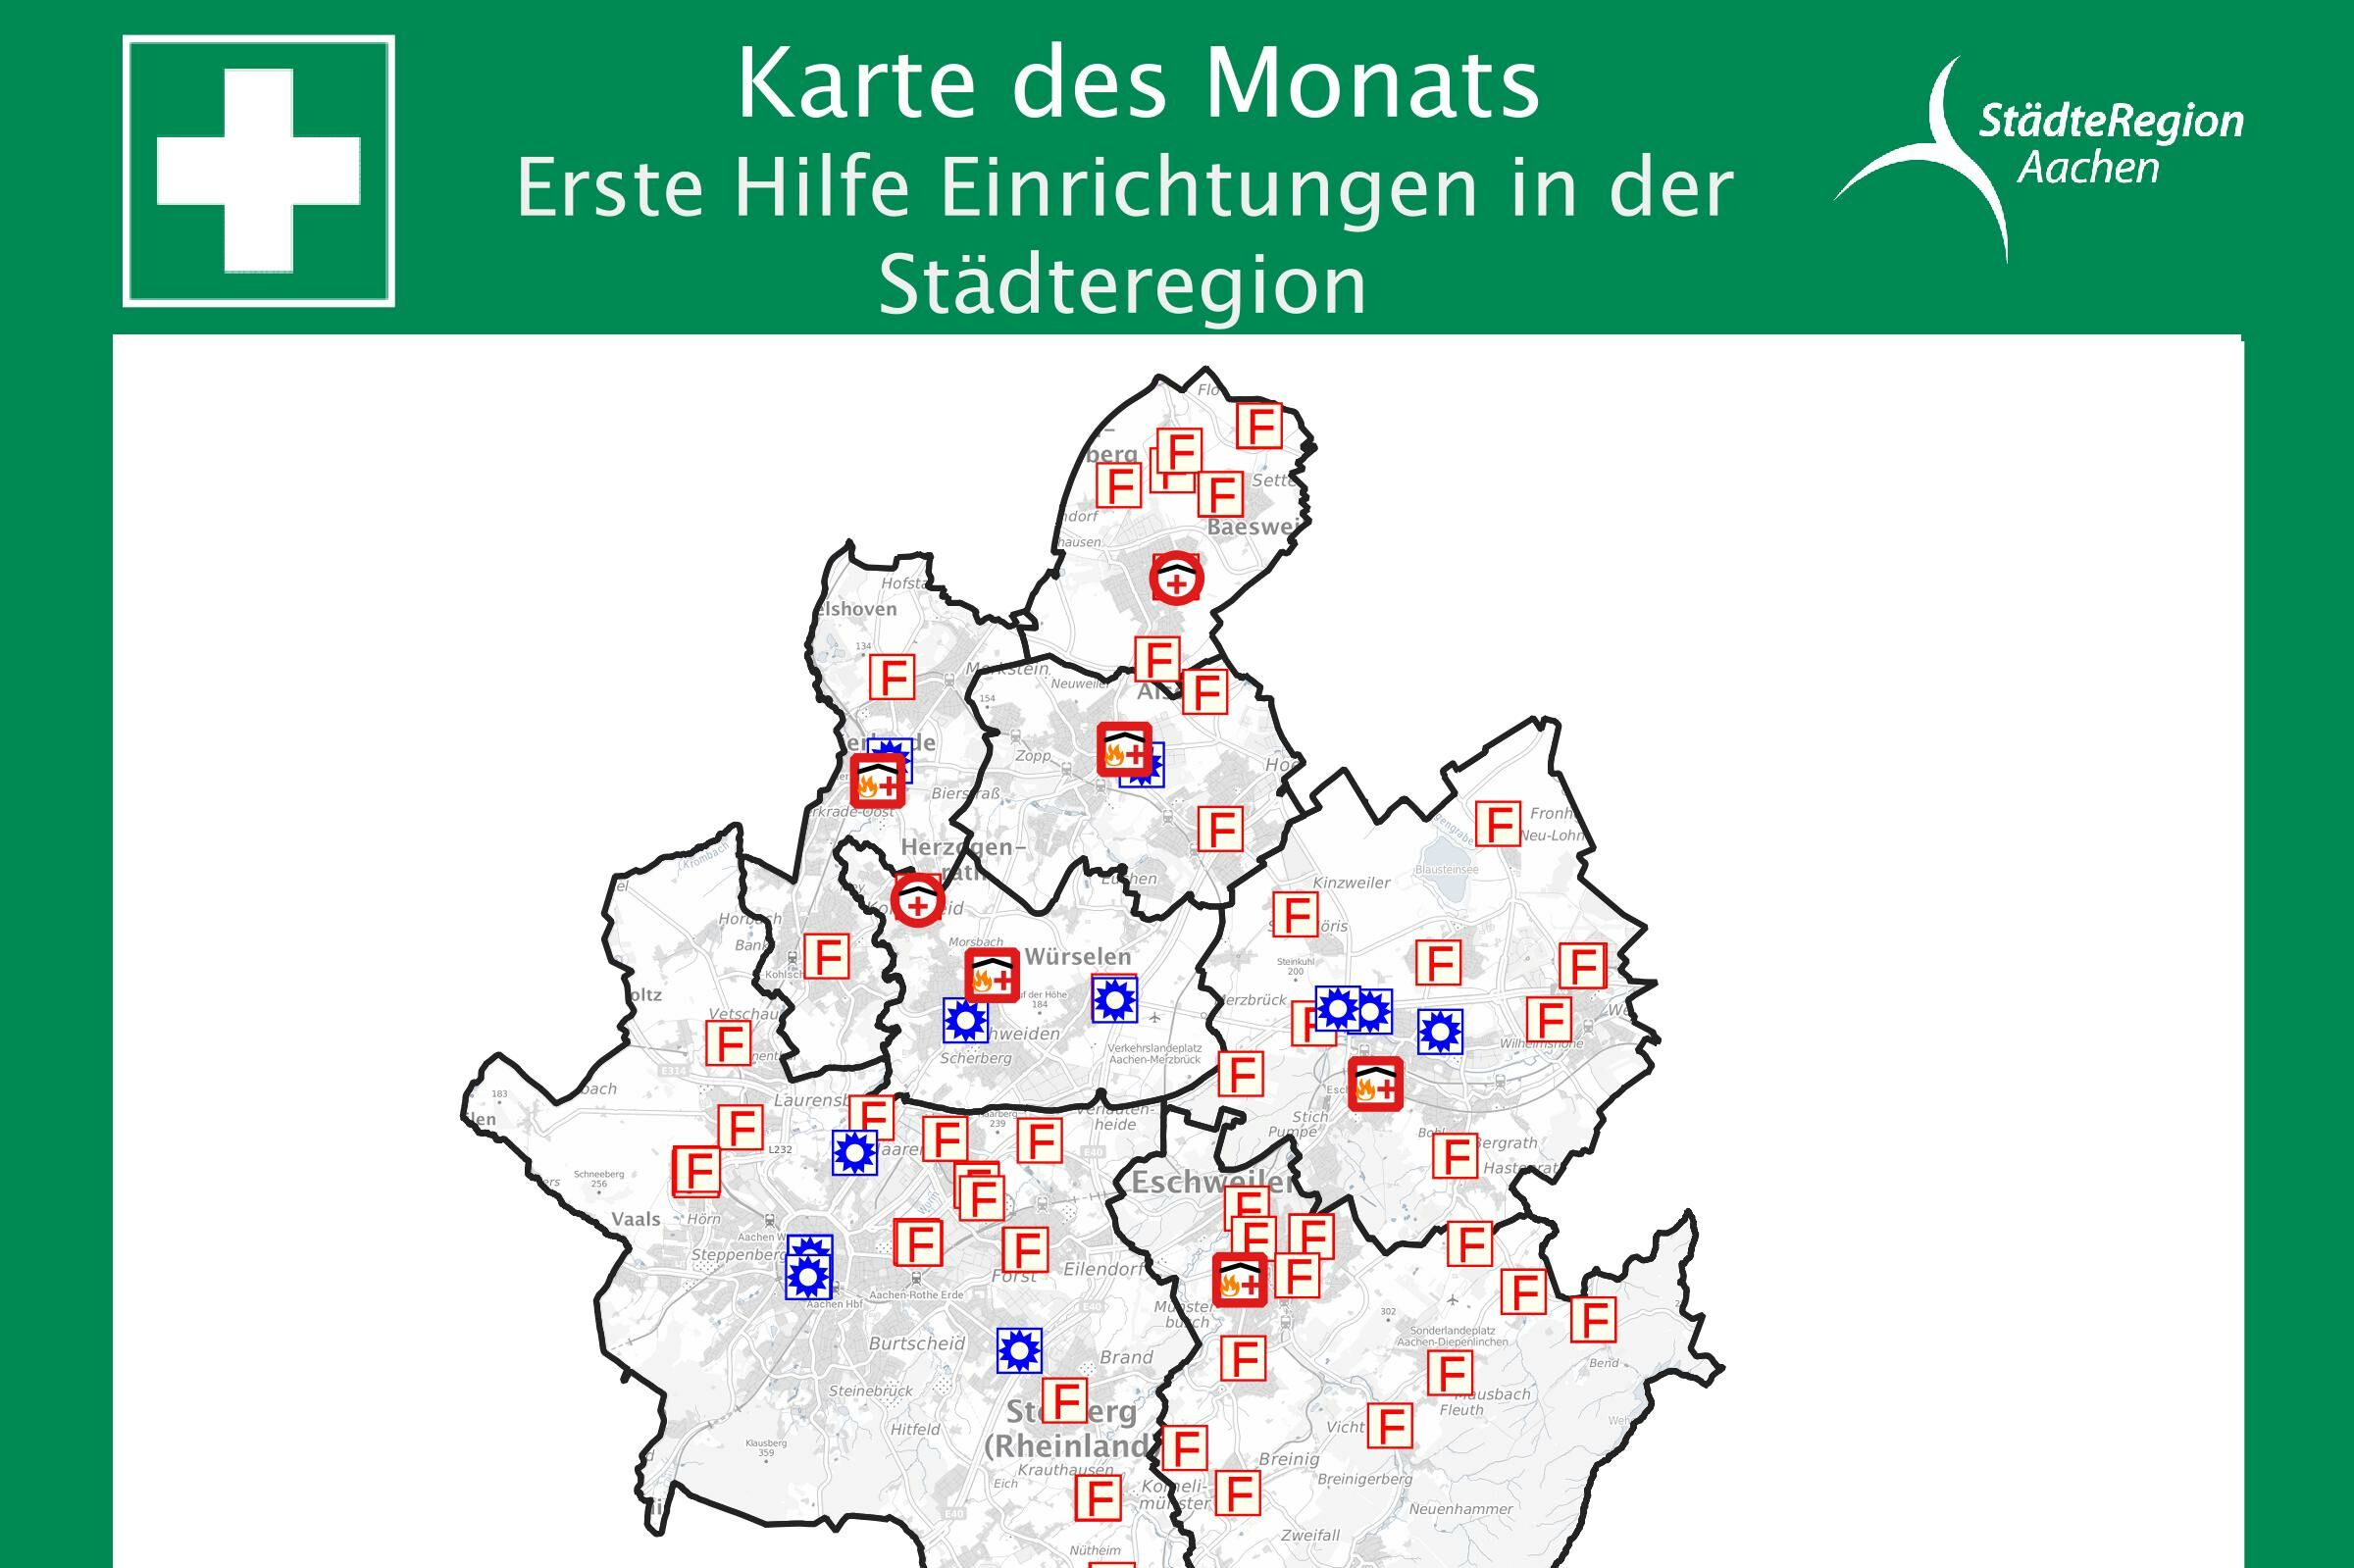 Karte zeigt verschiedene Rettungseinrichtungen in der Städteregion